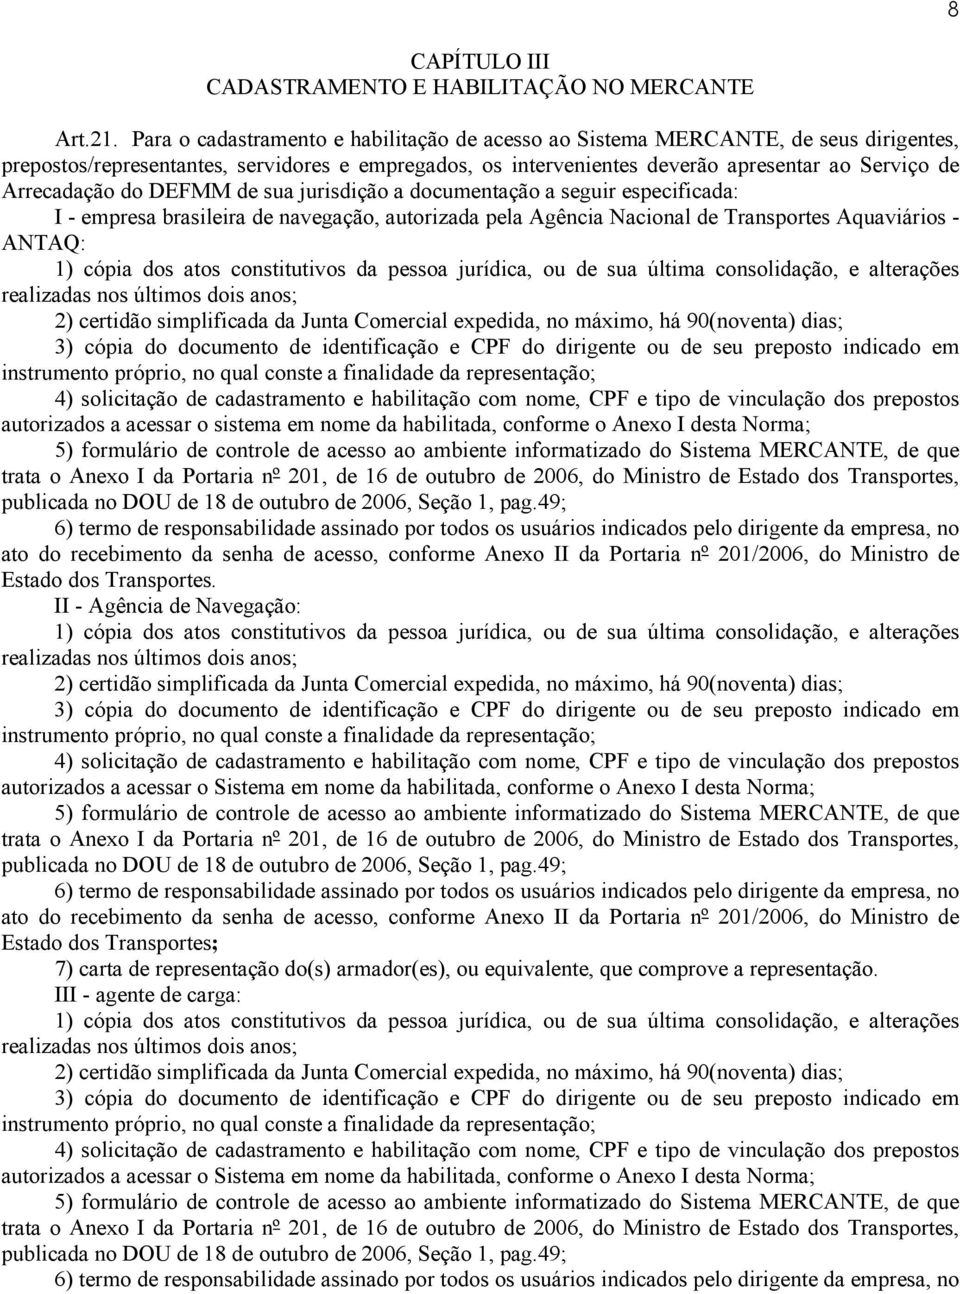 do DEFMM de sua jurisdição a documentação a seguir especificada: I - empresa brasileira de navegação, autorizada pela Agência Nacional de Transportes Aquaviários - ANTAQ: 1) cópia dos atos